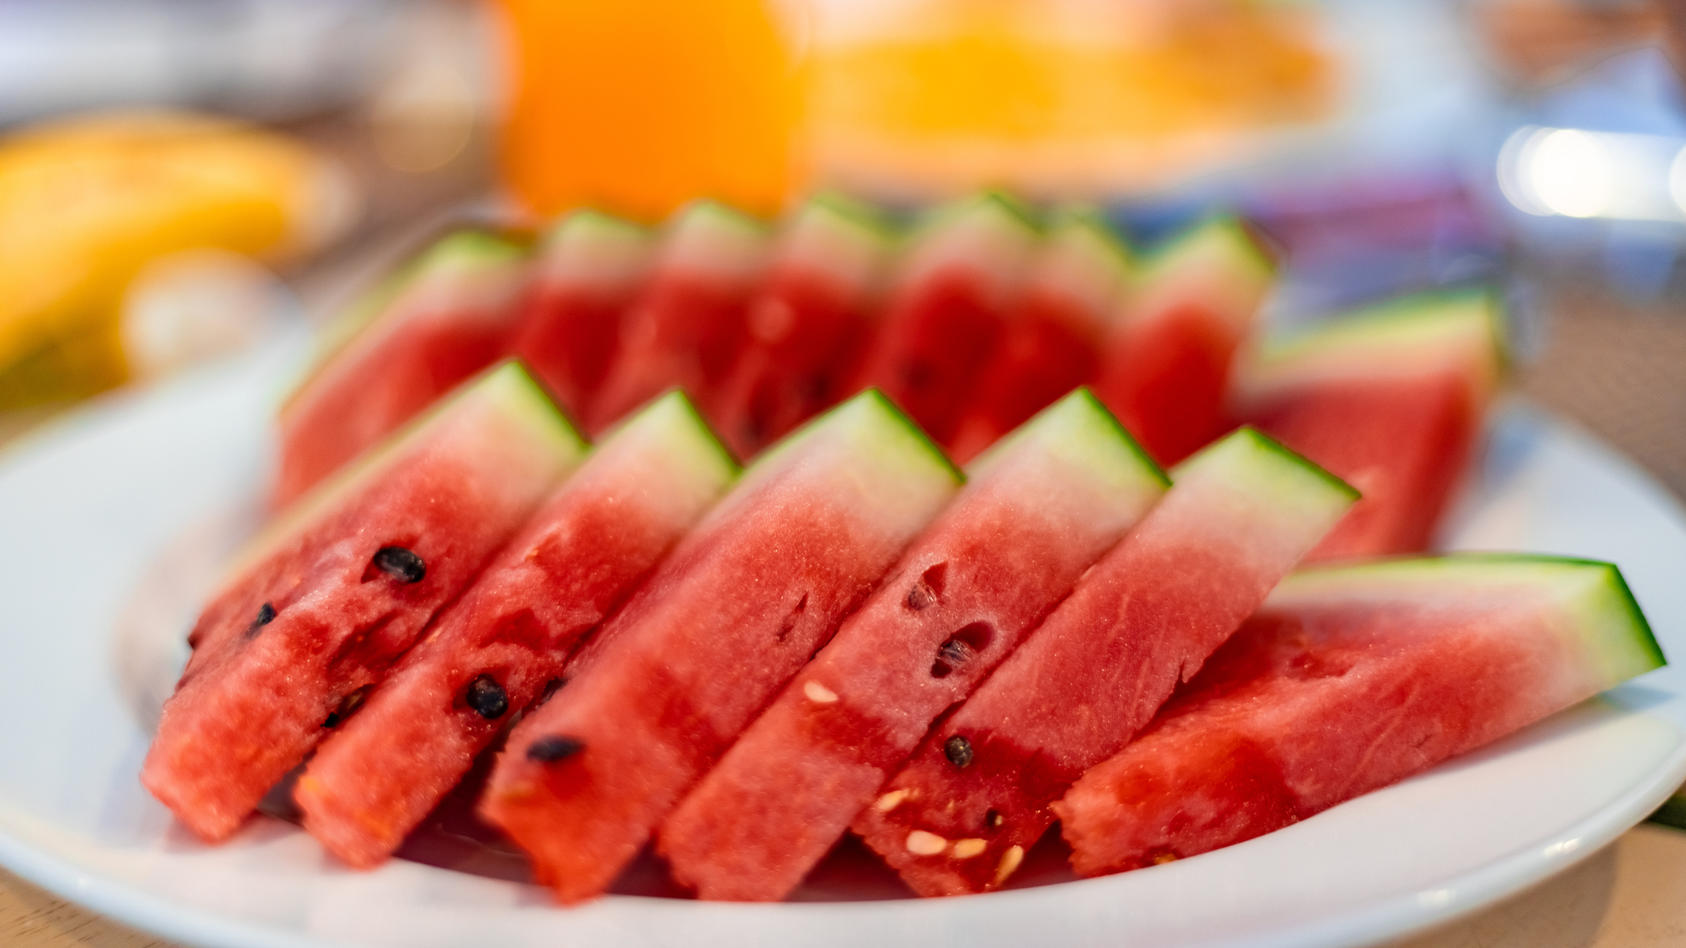 Wassermelone ist lecker - aber auch eine geeignete Diät-Nahrung?